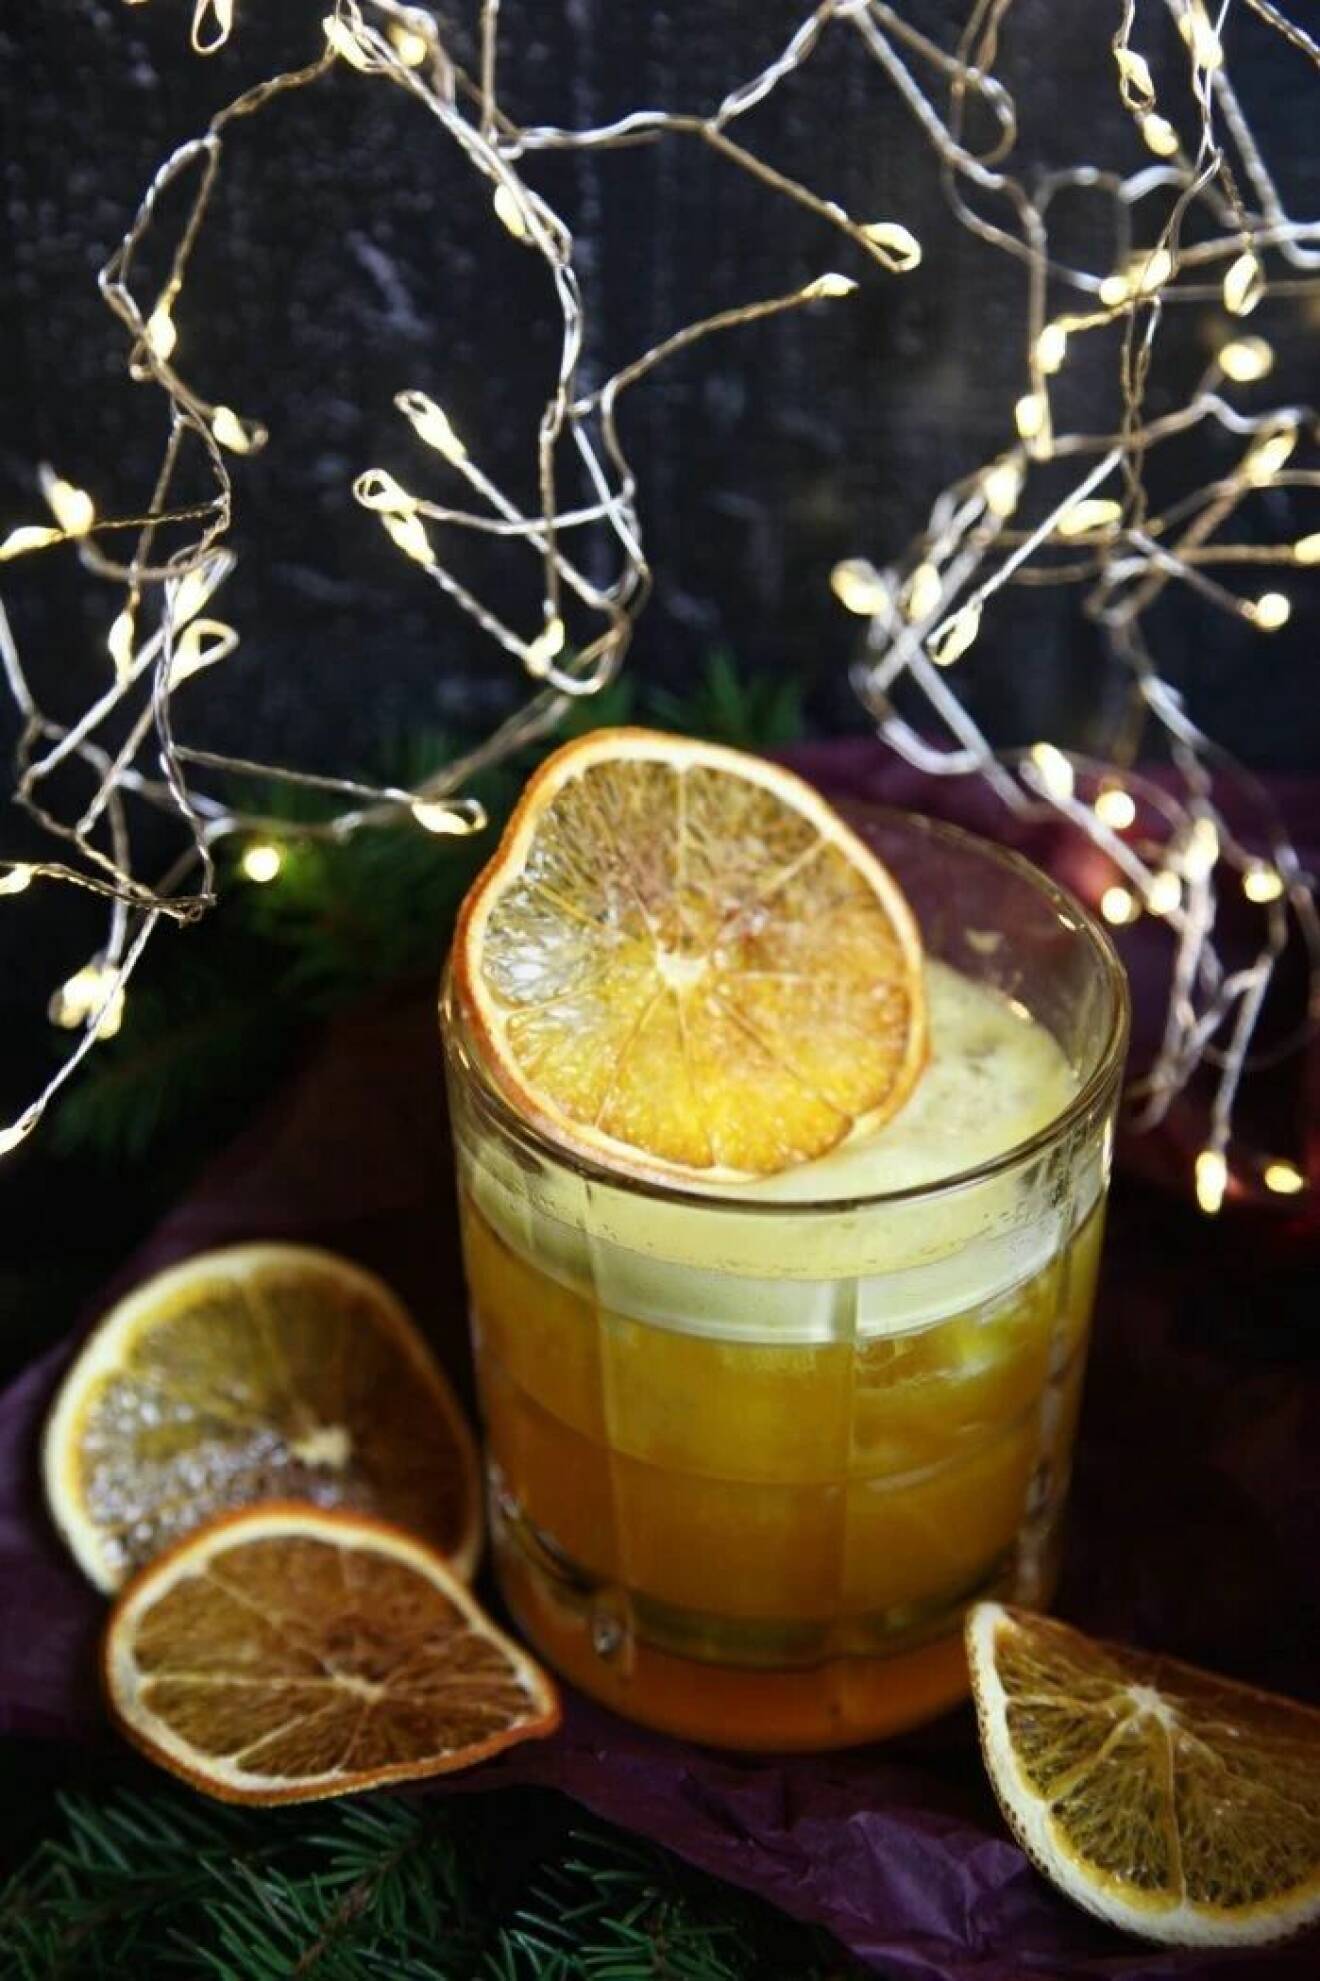 Juldrink med saffran, rom och apelsin av catarina könig